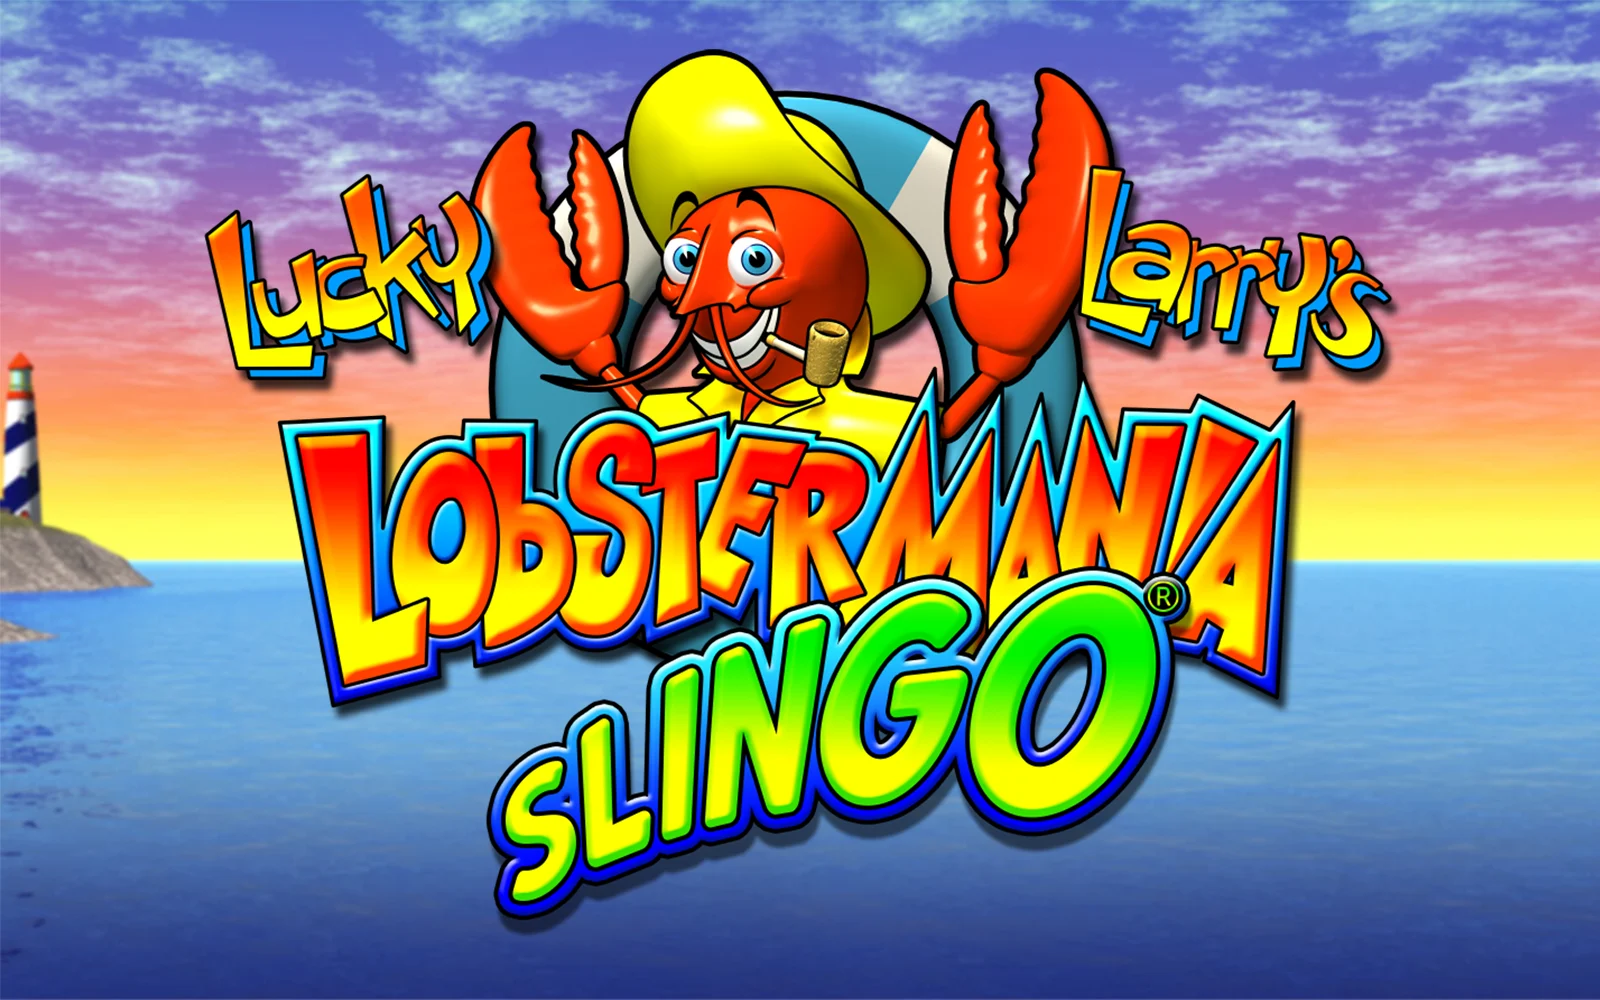 Zagraj w Lucky Larry's Lobstermania Slingo w kasynie online Starcasino.be